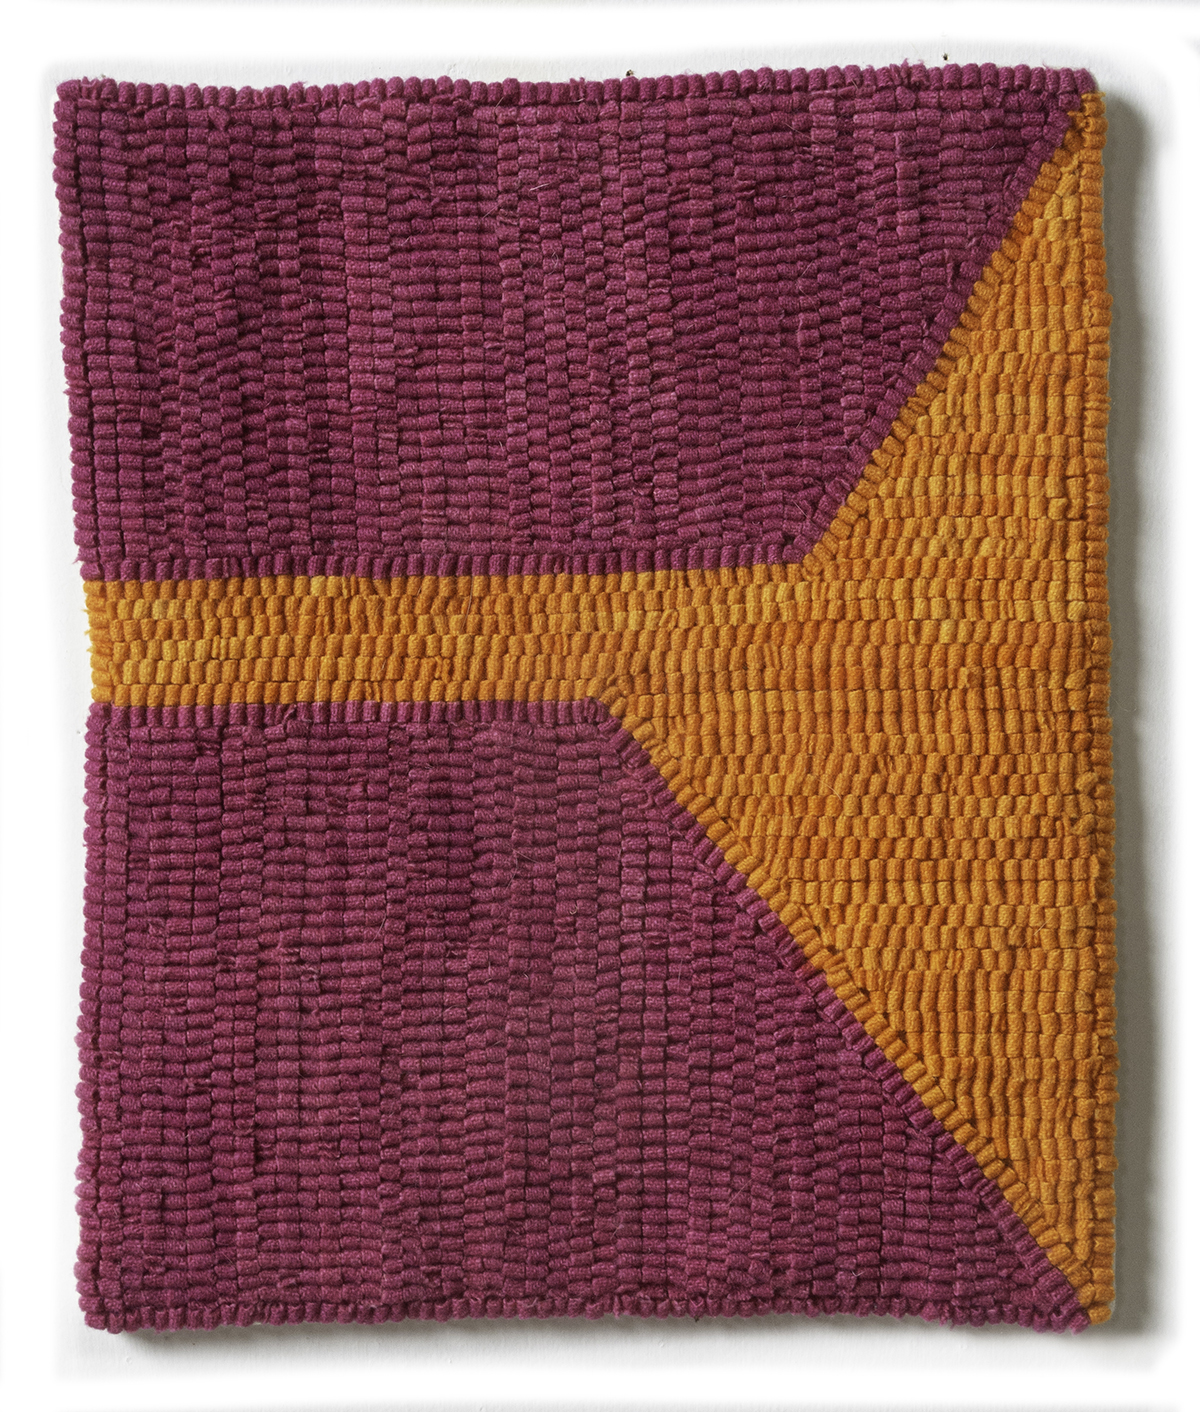 Altoon Sultan. <em>Pink/Orange Ground</em>, 2017. Hand-dyed wool on linen,  12 x 10 inches  (30.5 x 25.4 cm)